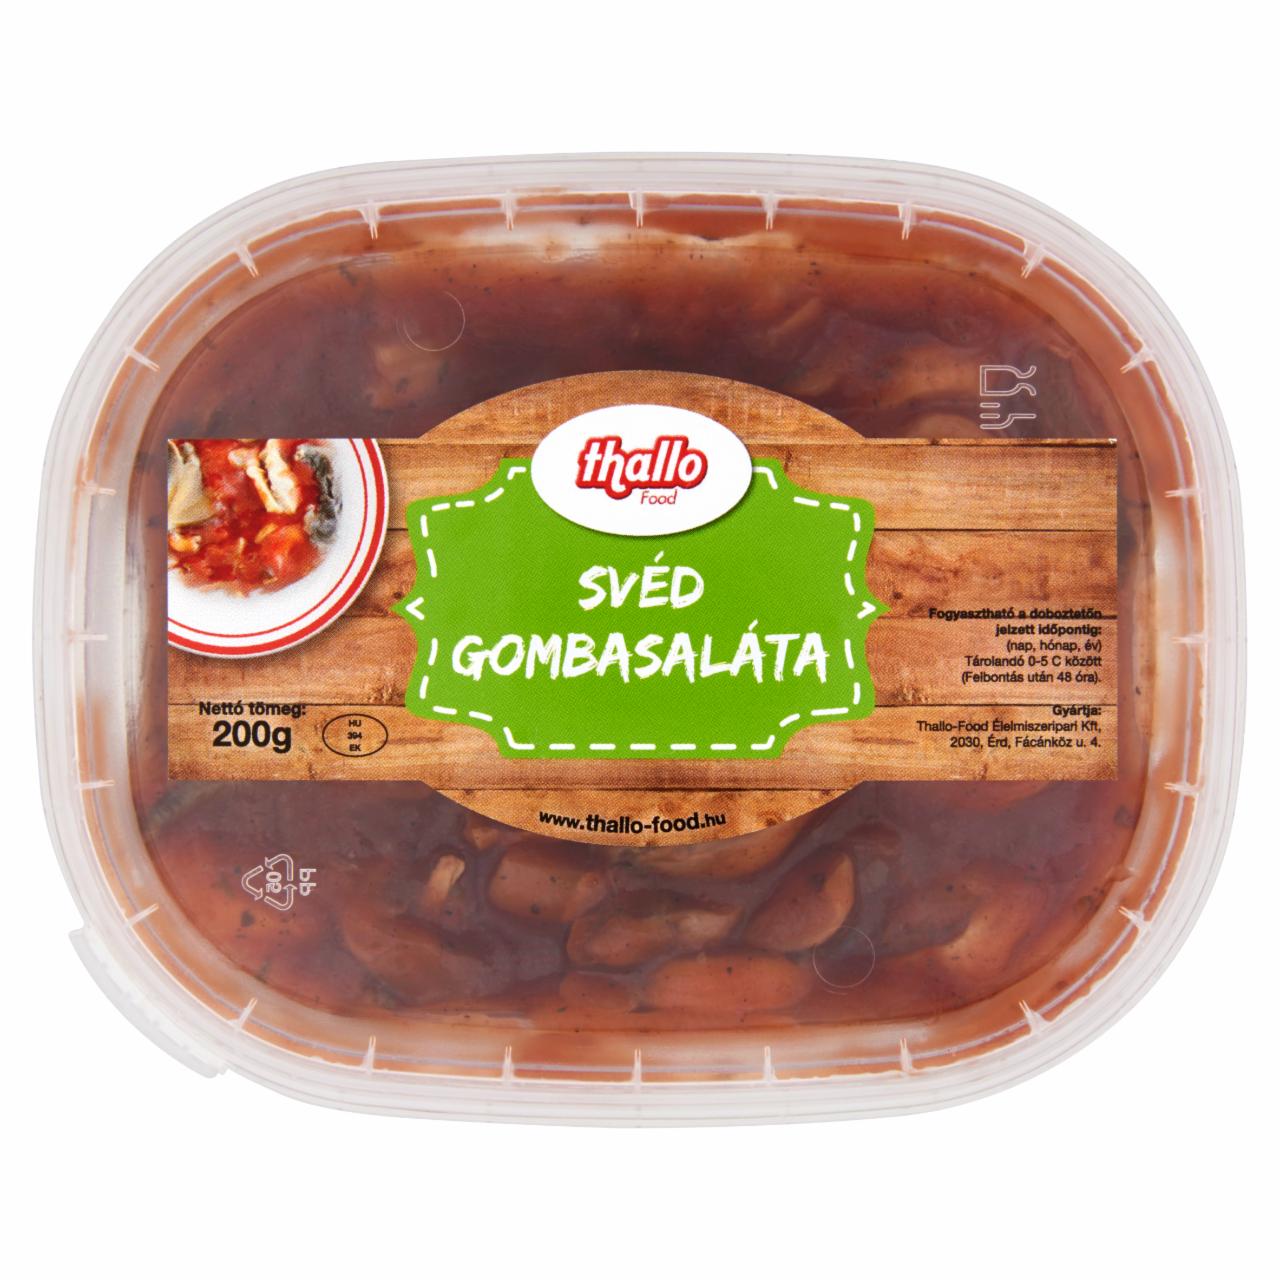 Képek - Thallo Food svéd gombasaláta 200 g